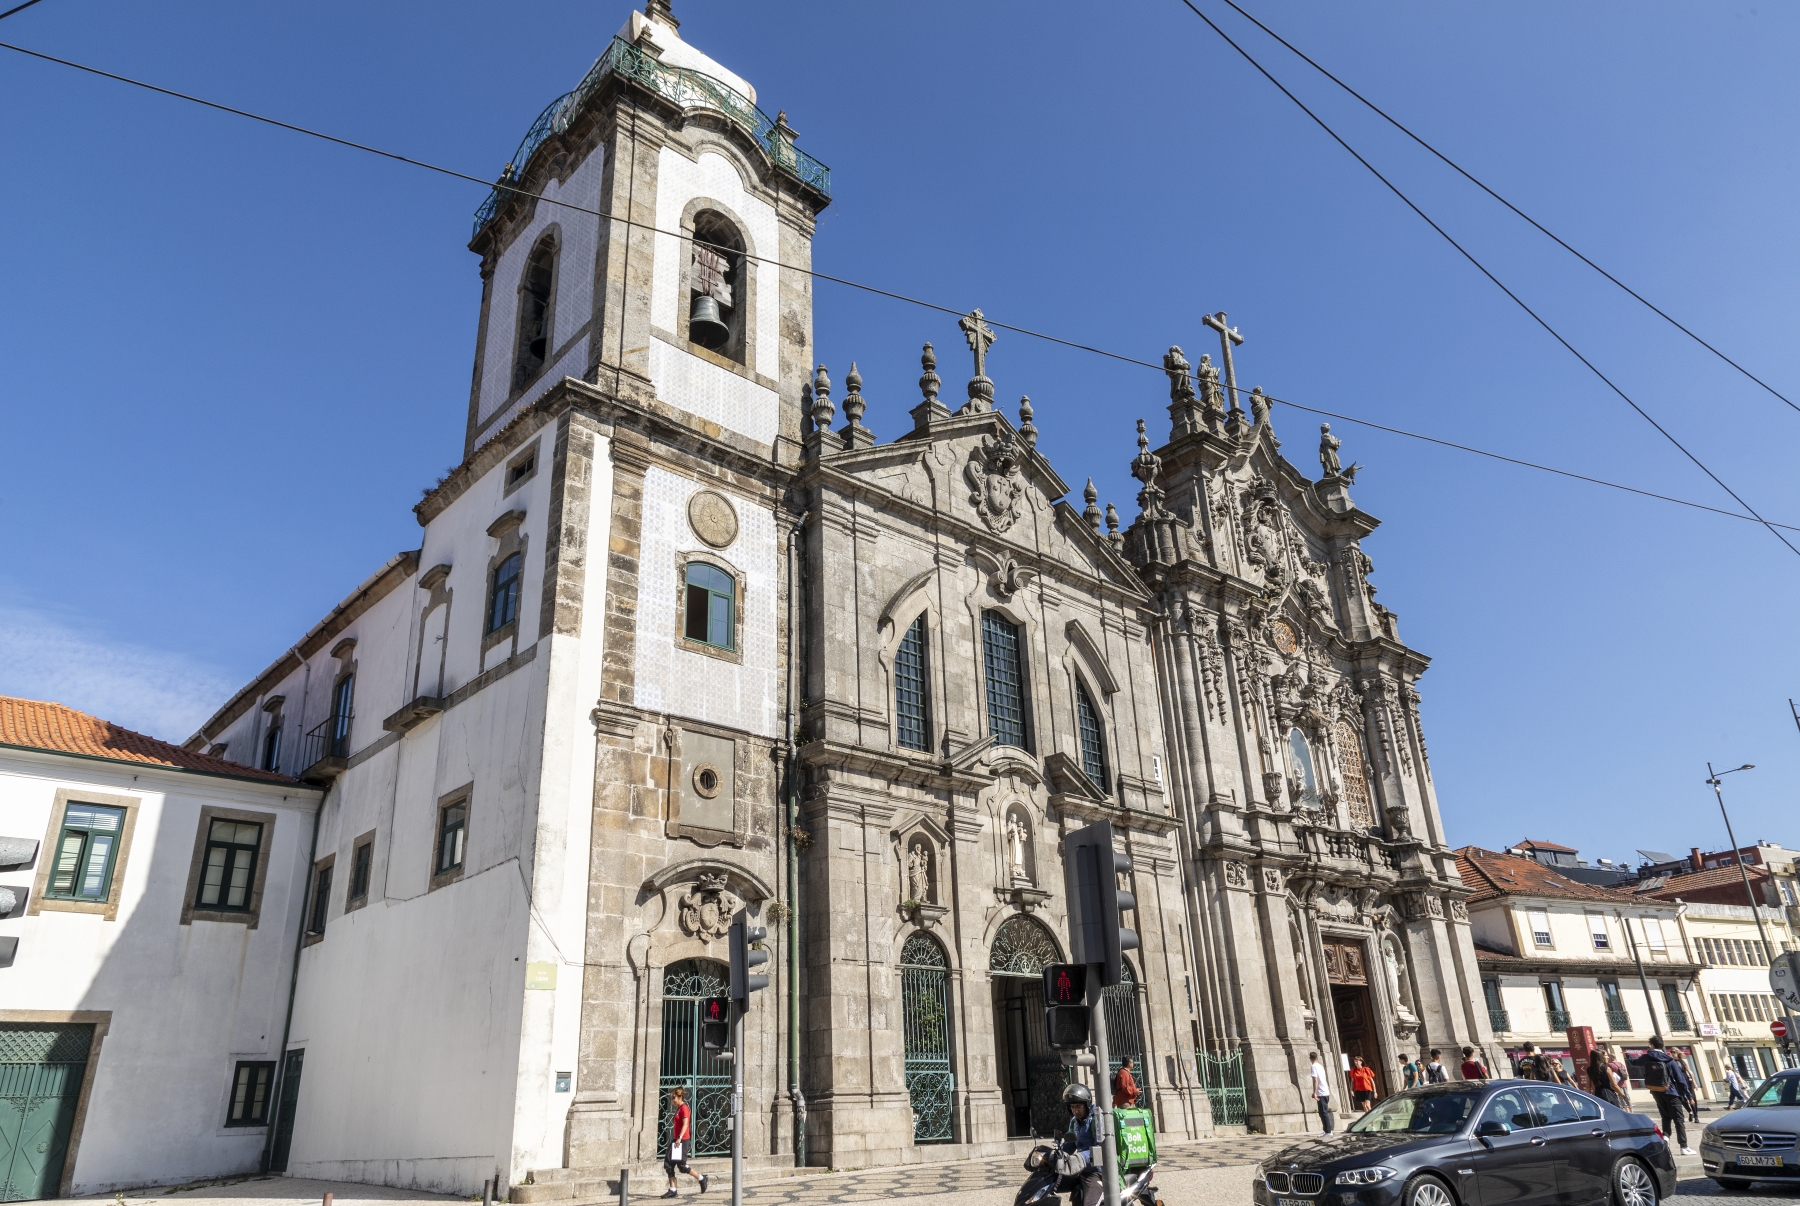 Two Churches Porto